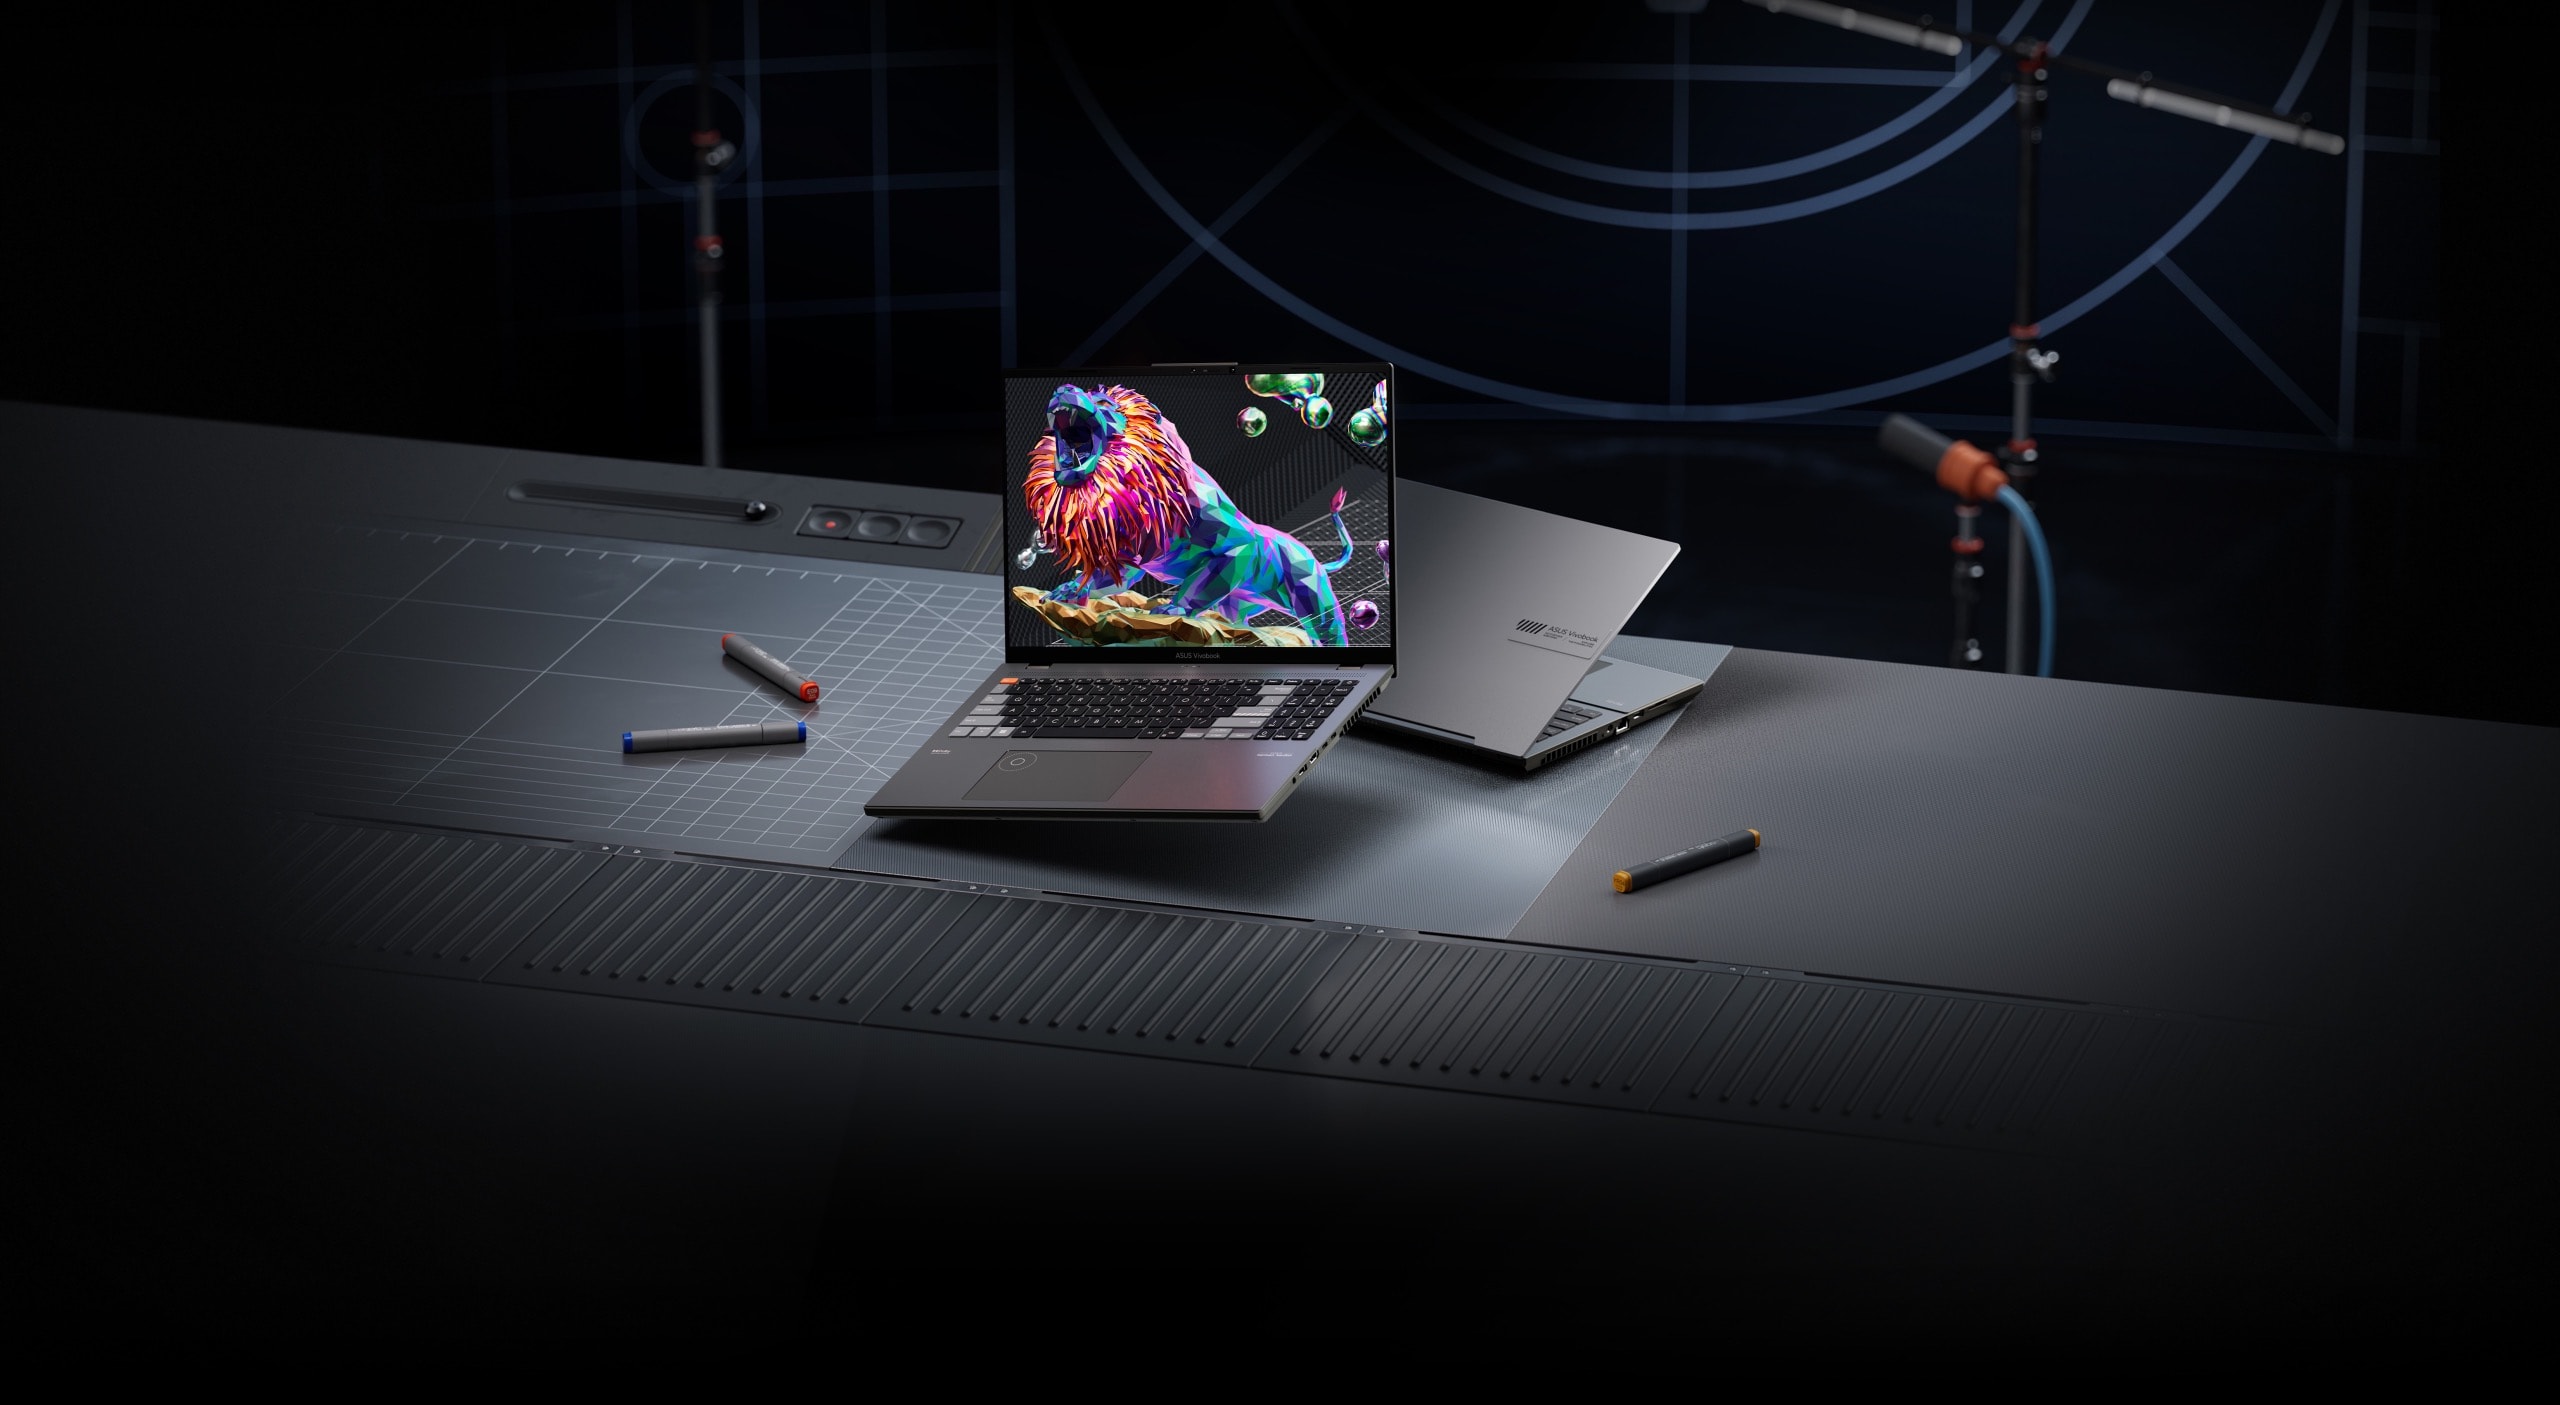 Чорно-срібляста модель Vivobook Pro 16X OLED показана на столі в студії звукозапису, а на екрані чорного ноутбука зображено рикаючий лев.